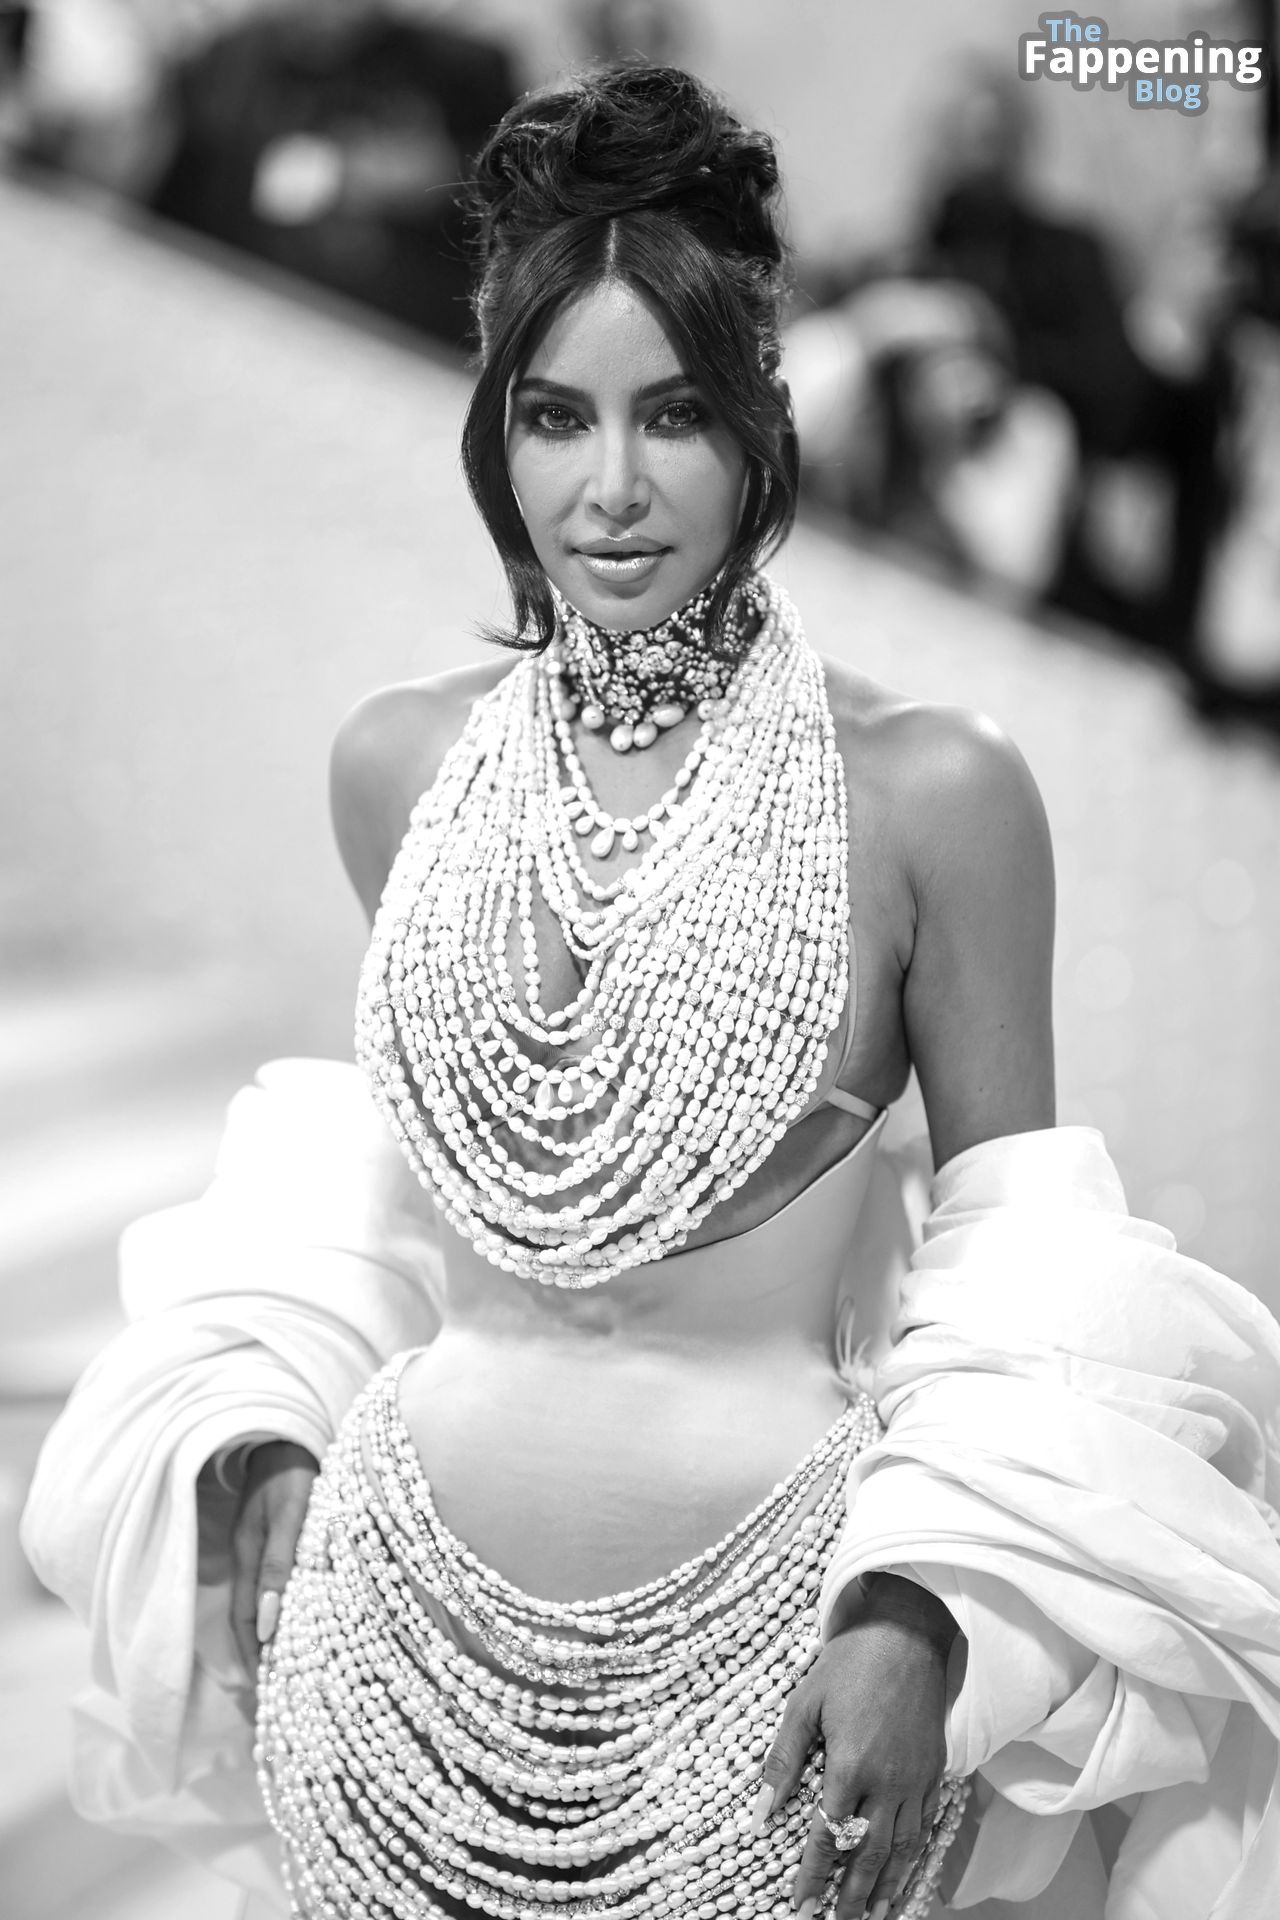 Kim-Kardashian-Sexy-The-Fappening-Blog-5.jpg